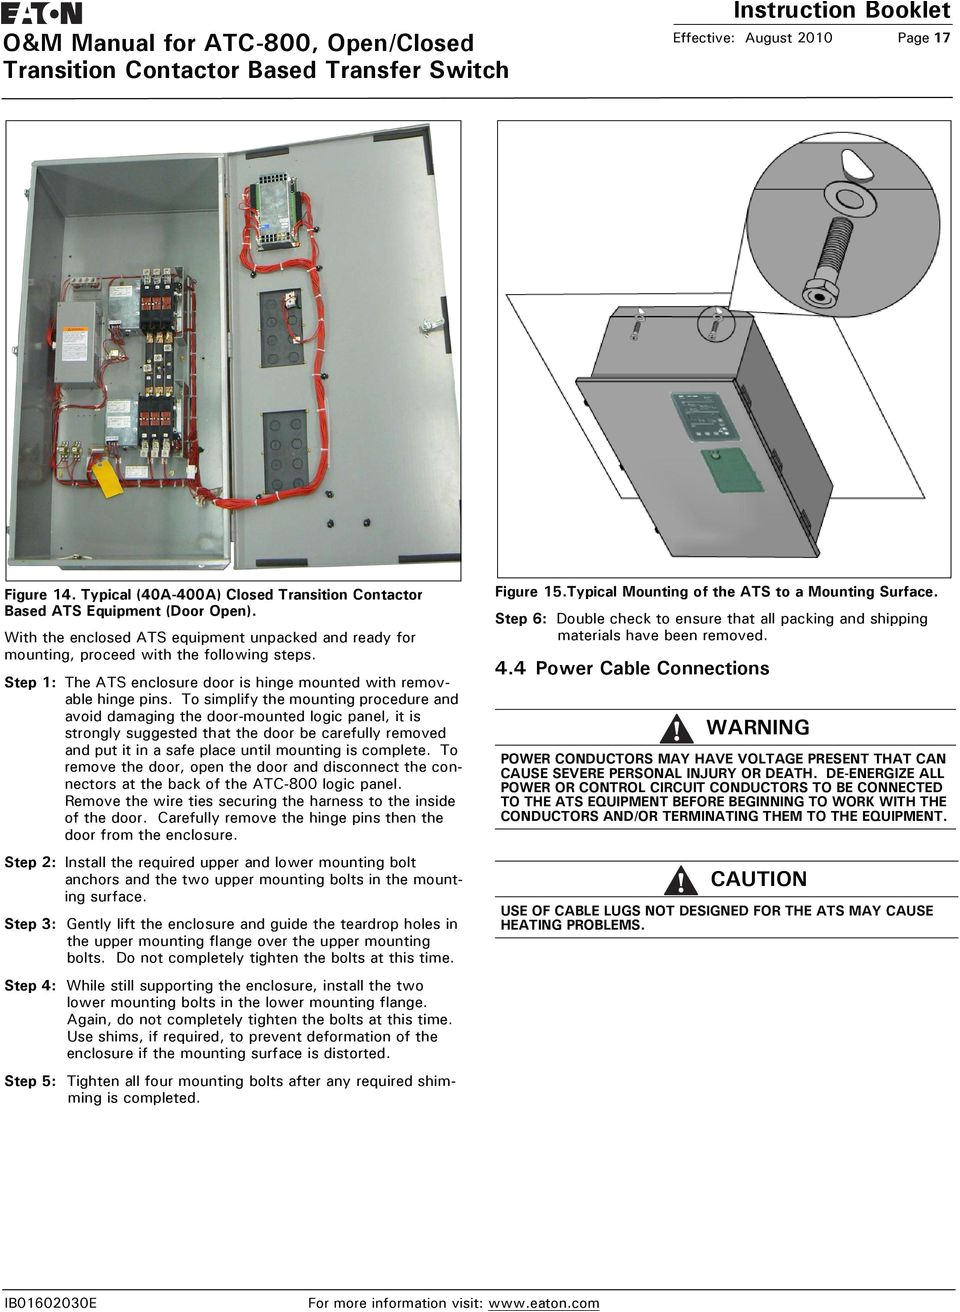 eaton atc wiring diagram wiring diagram databaseatc wiring diagram basic electronics wiring diagram eaton atc wiring